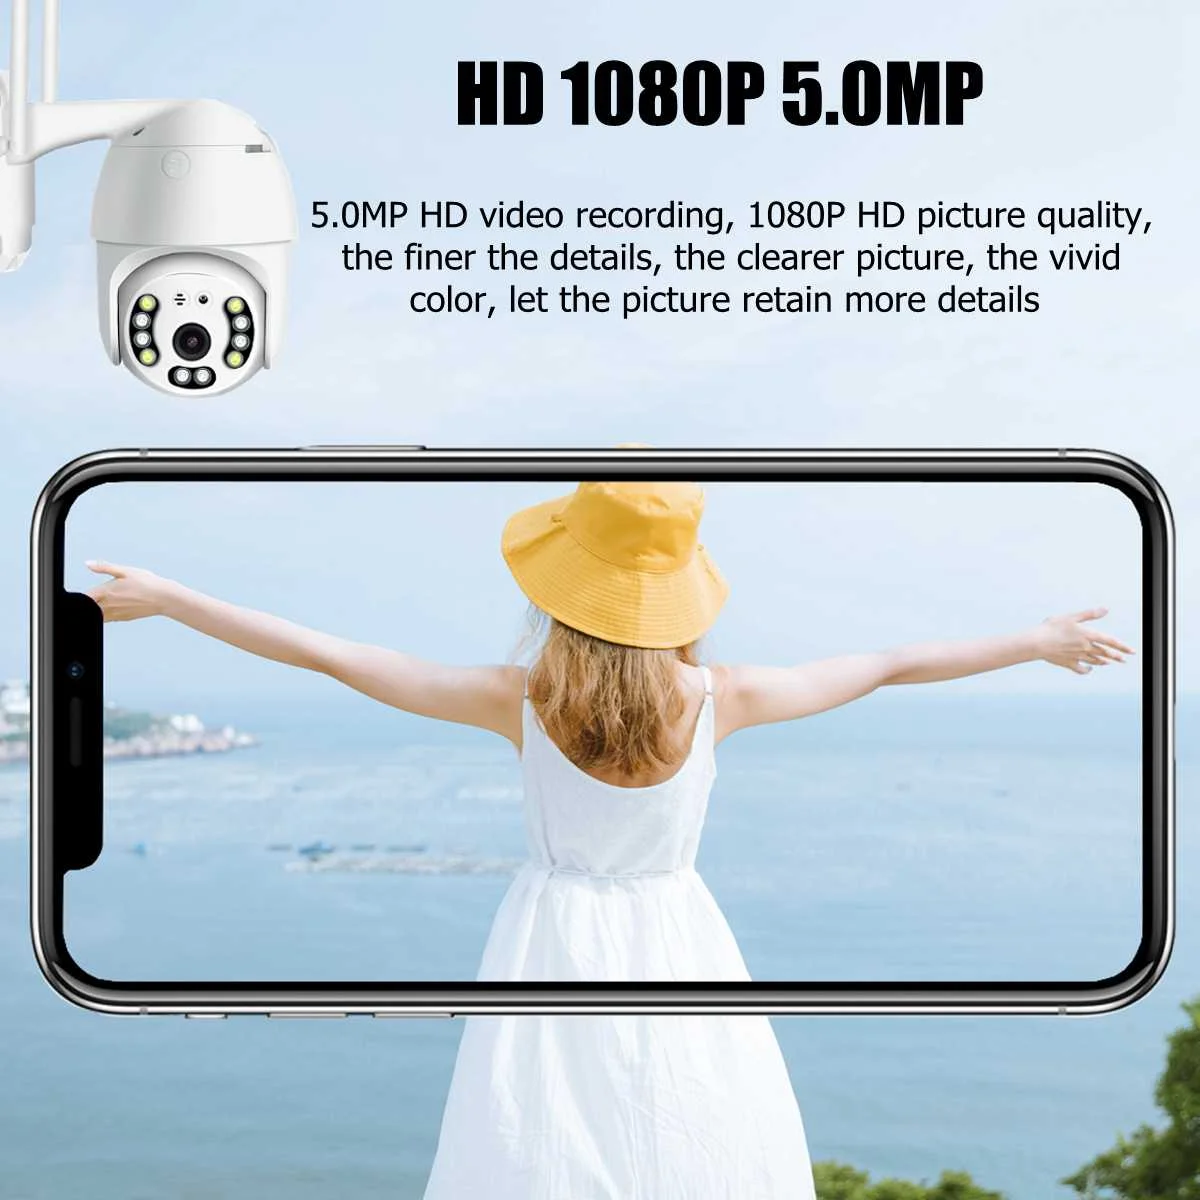 Беспроводная Wifi ip-камера 5.0MP 1080P PTZ наружная скоростная купольная камера безопасности панорамирование 5X цифровой зум сеть видеонаблюдения